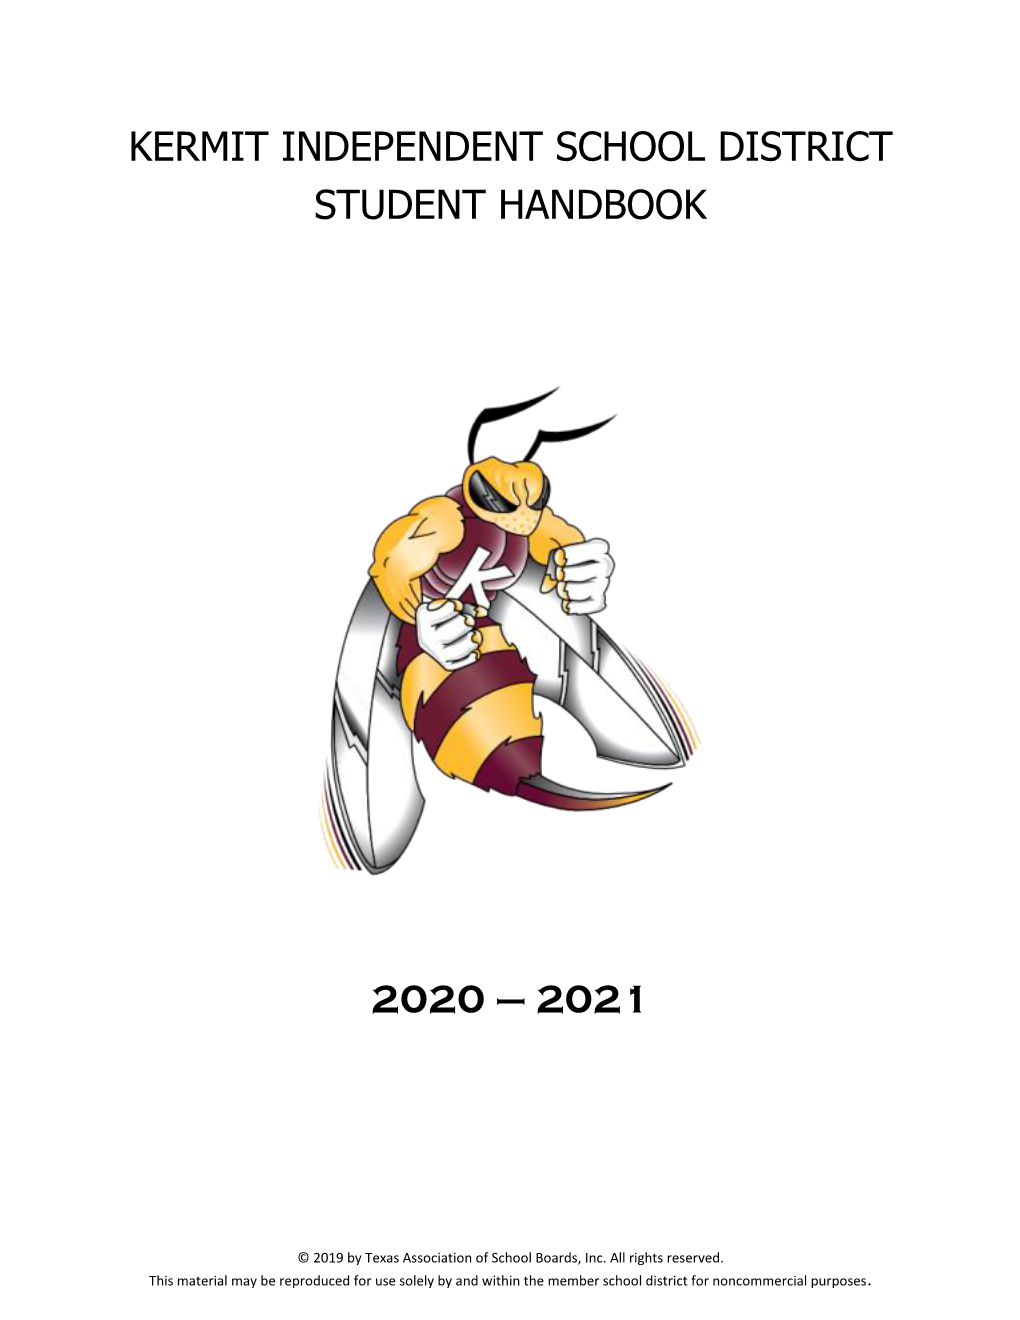 Kermit ISD Student Handbook